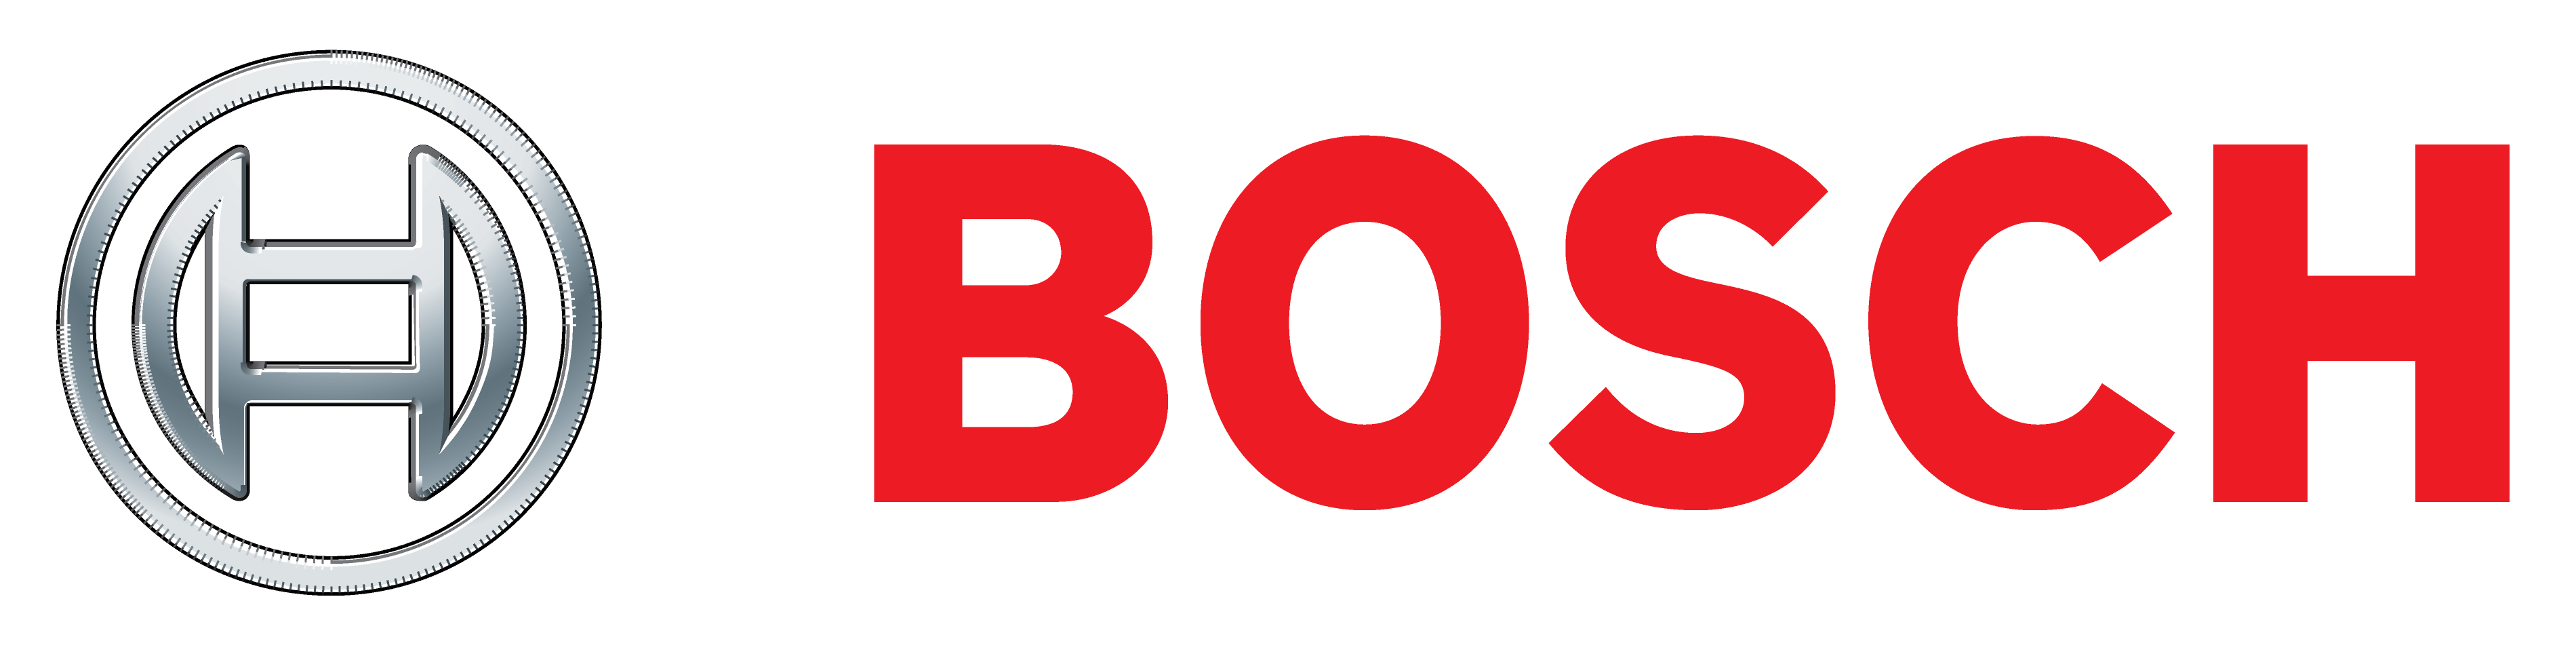 Режем цены на измерительный инструмент Bosch